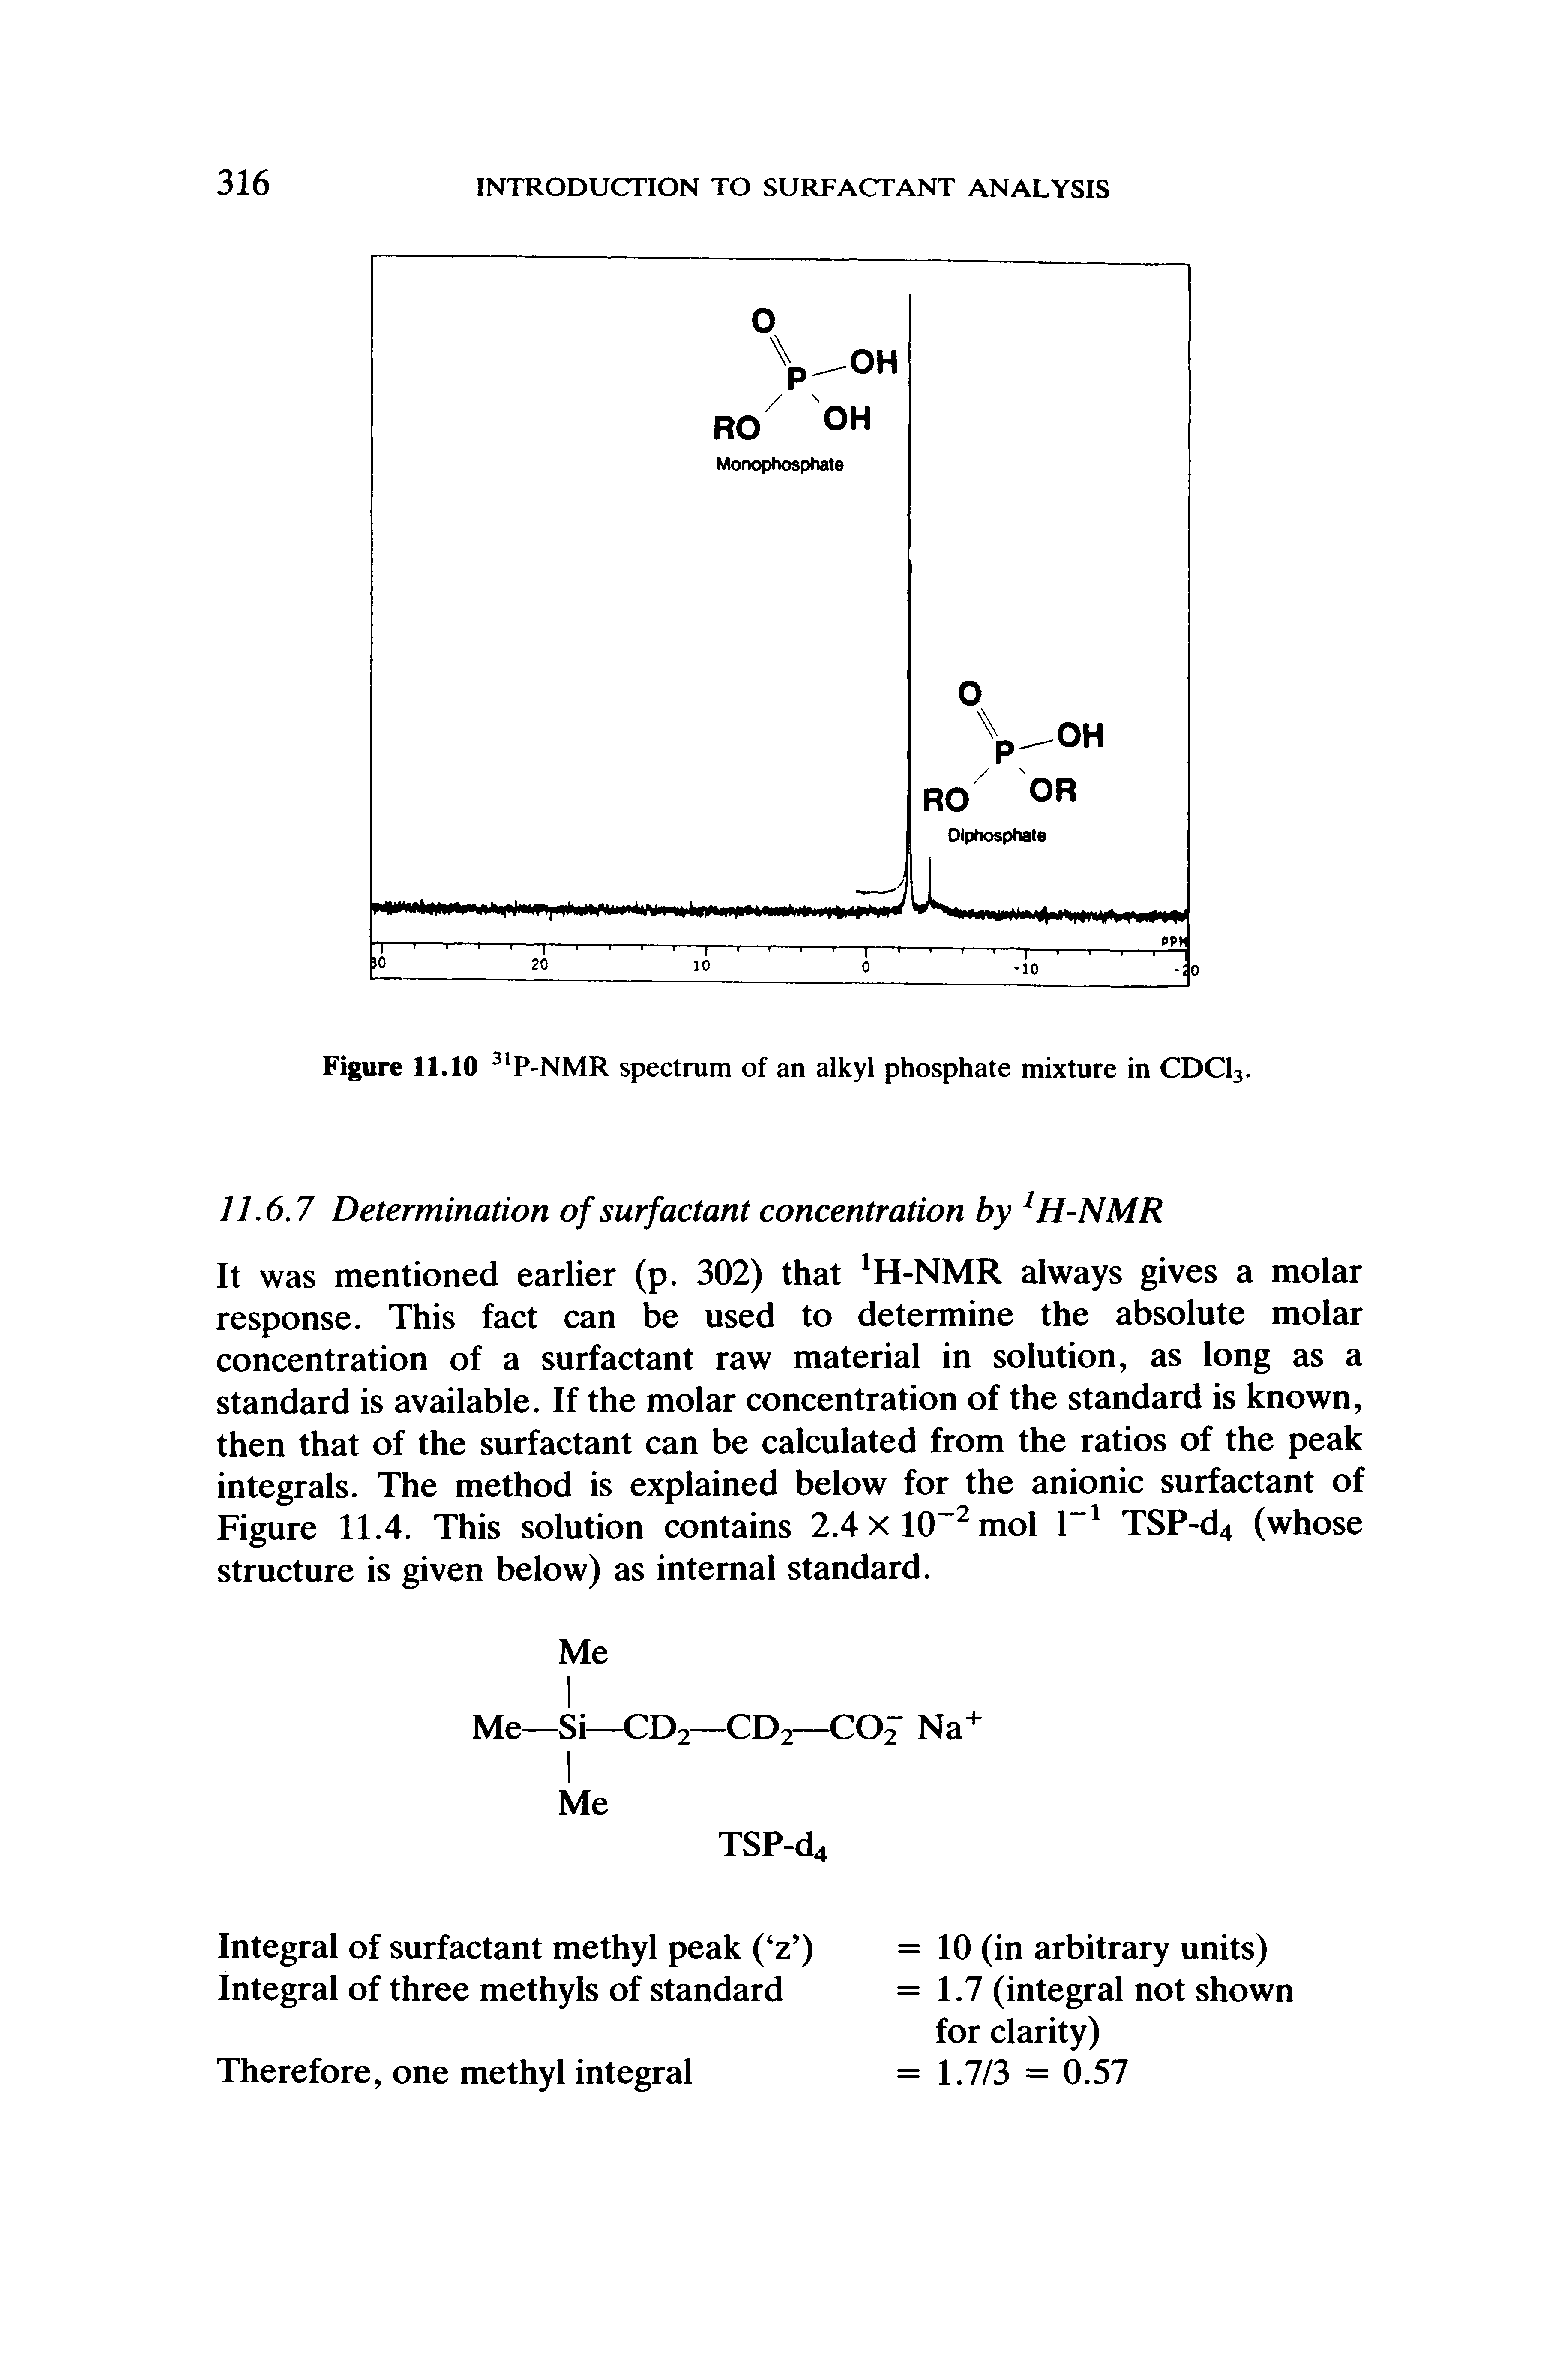 Figure 11.10 P-NMR spectrum of an alkyl phosphate mixture in CDCI3.